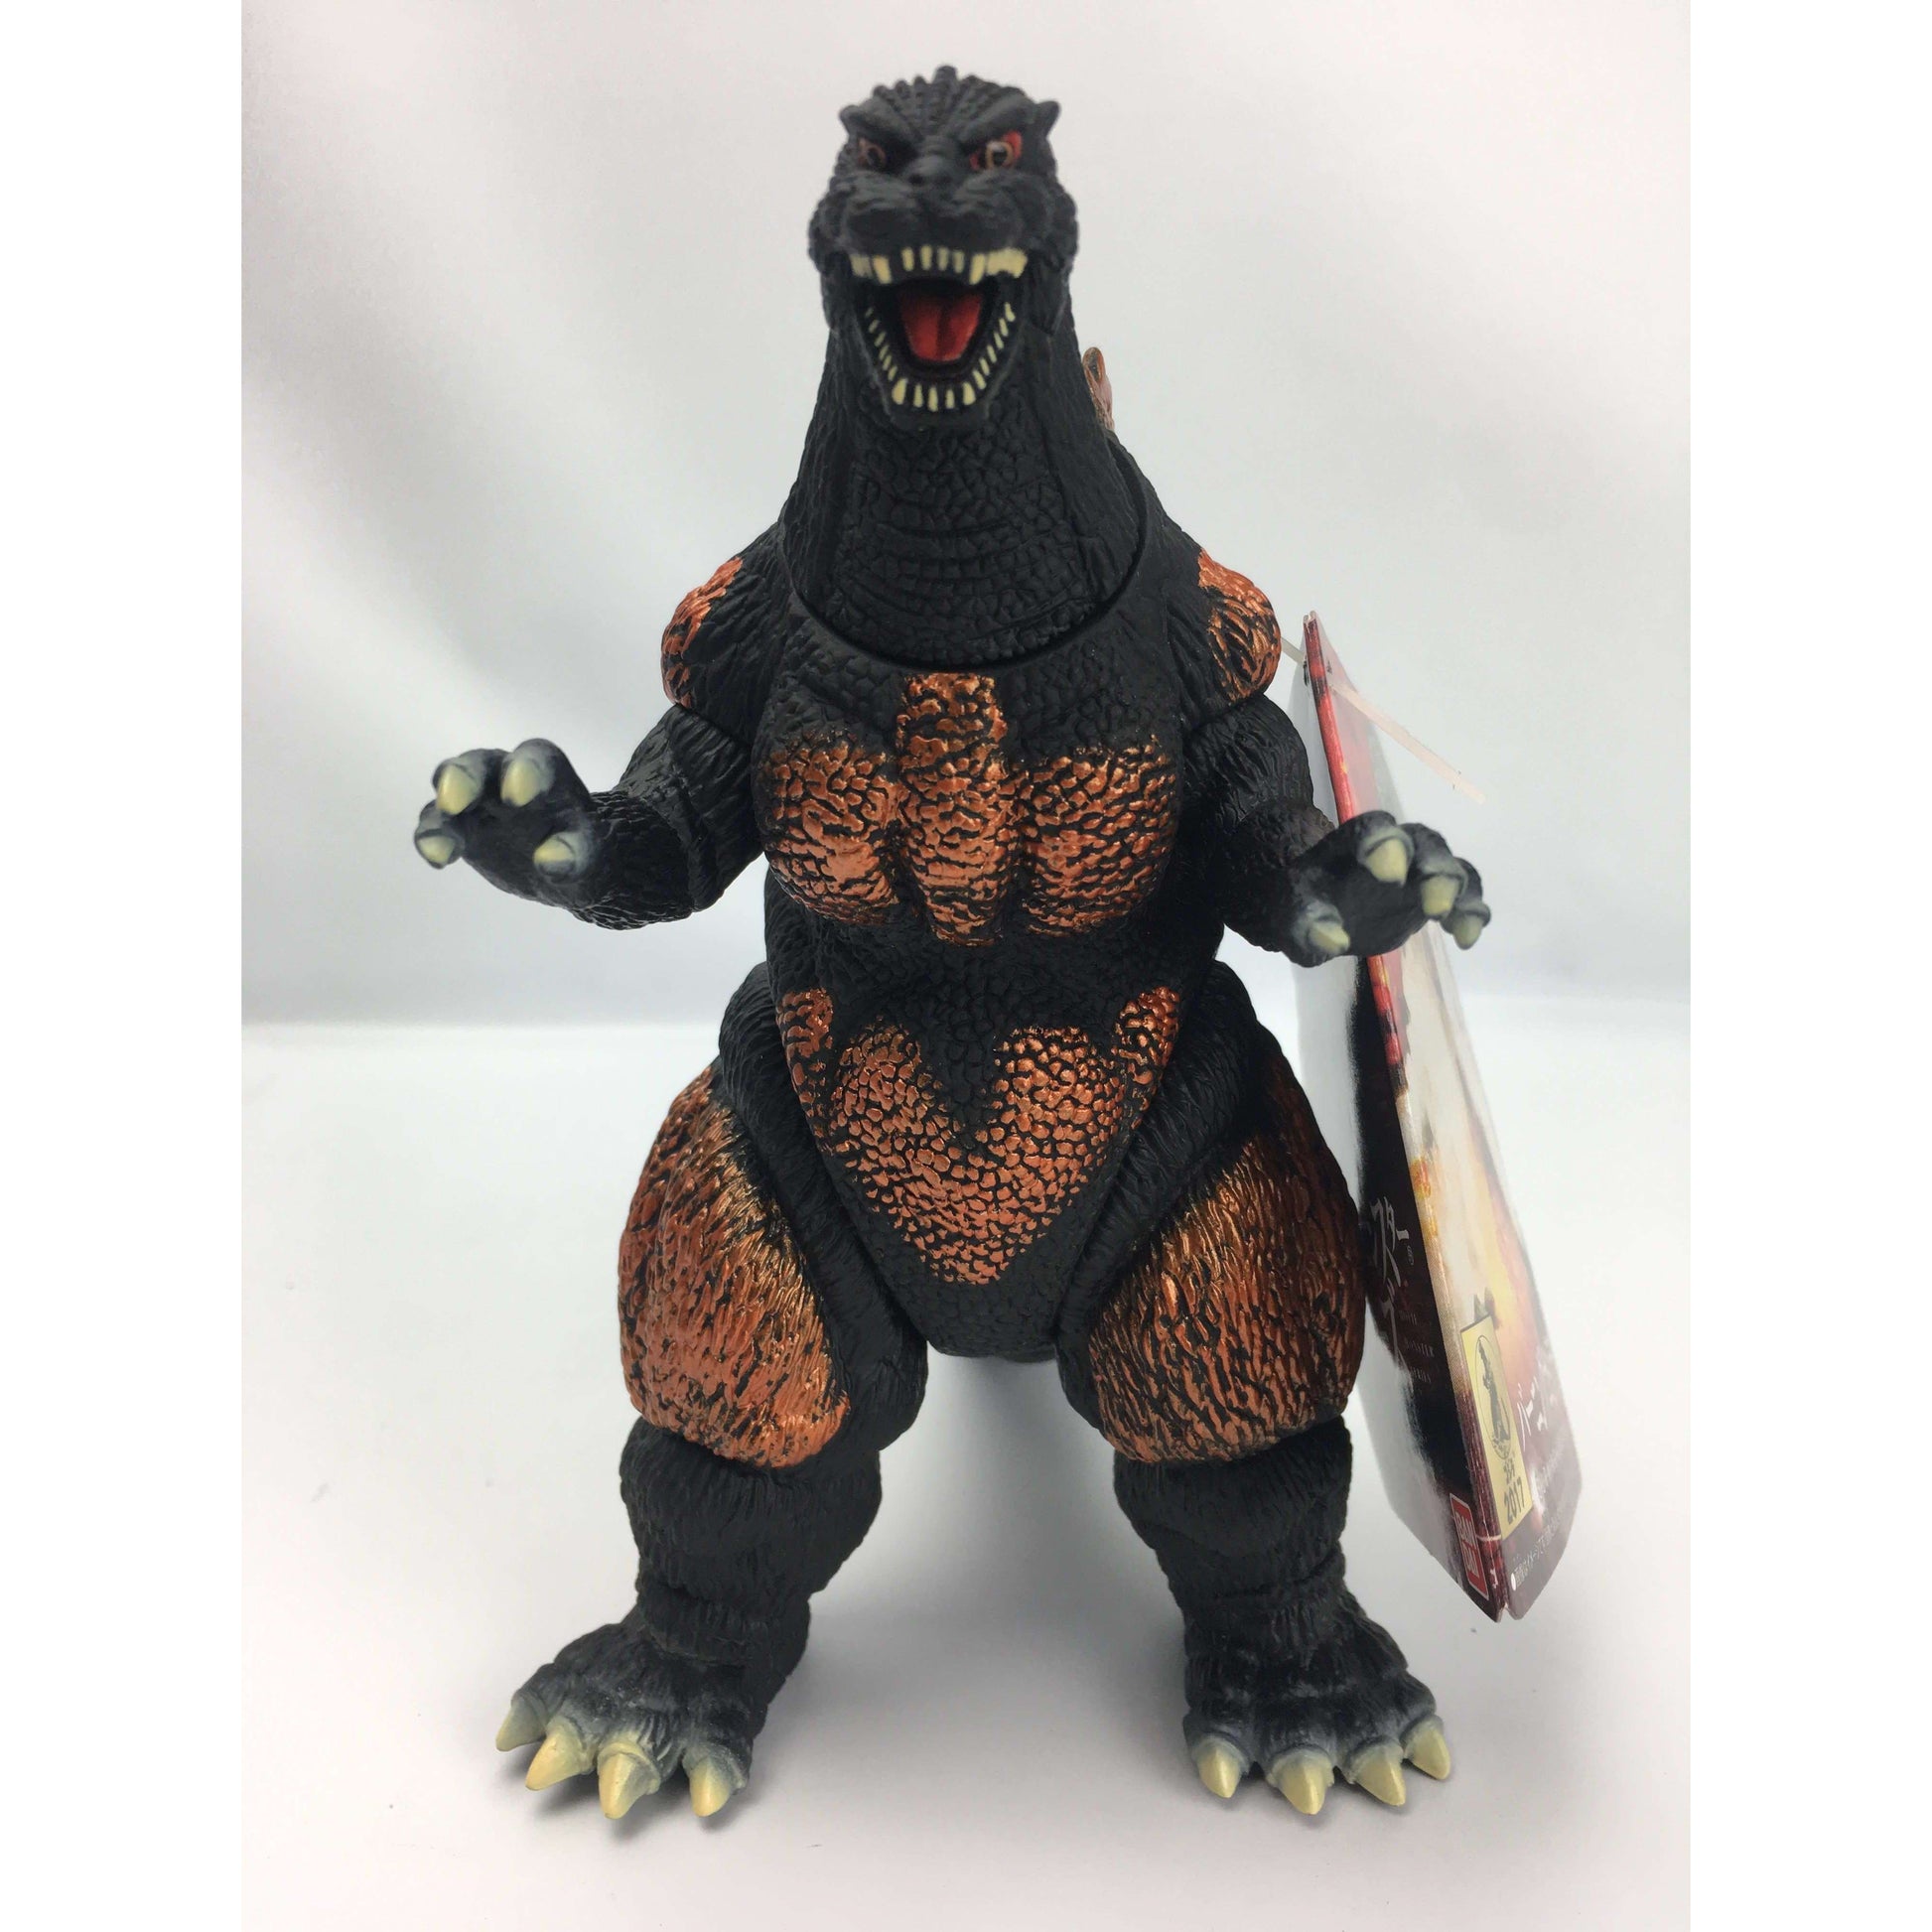 Movie Monster Series Godzilla Earth 2018 (Heat Ray Radiation